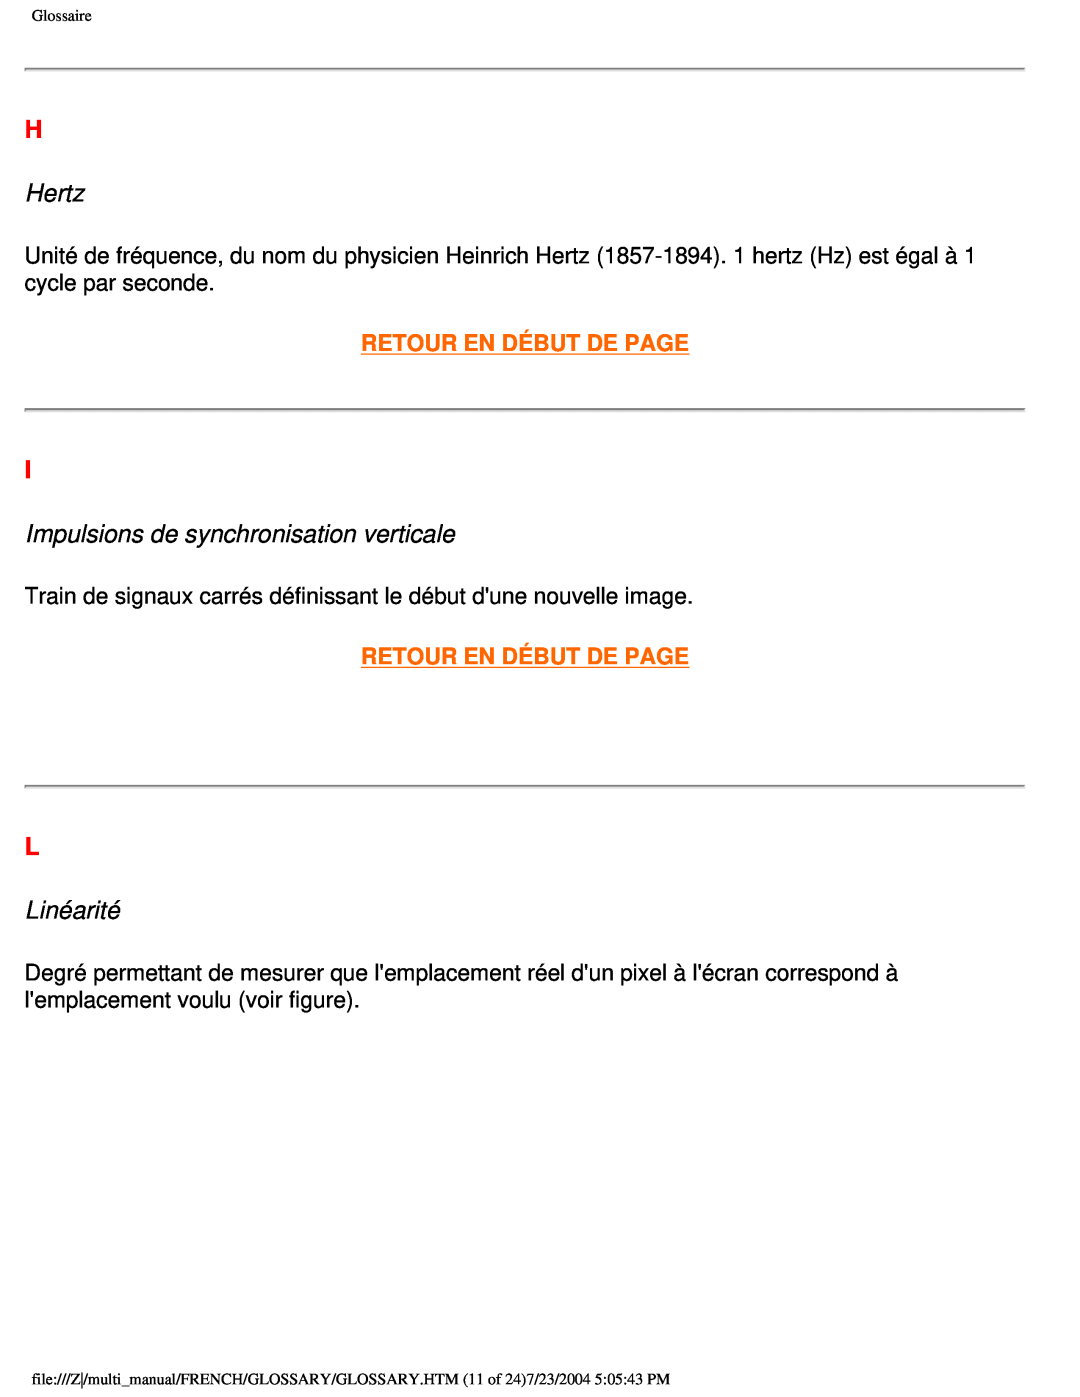 Philips 107B3 user manual Hertz, Impulsions de synchronisation verticale, Linéarité, Retour En Début De Page 